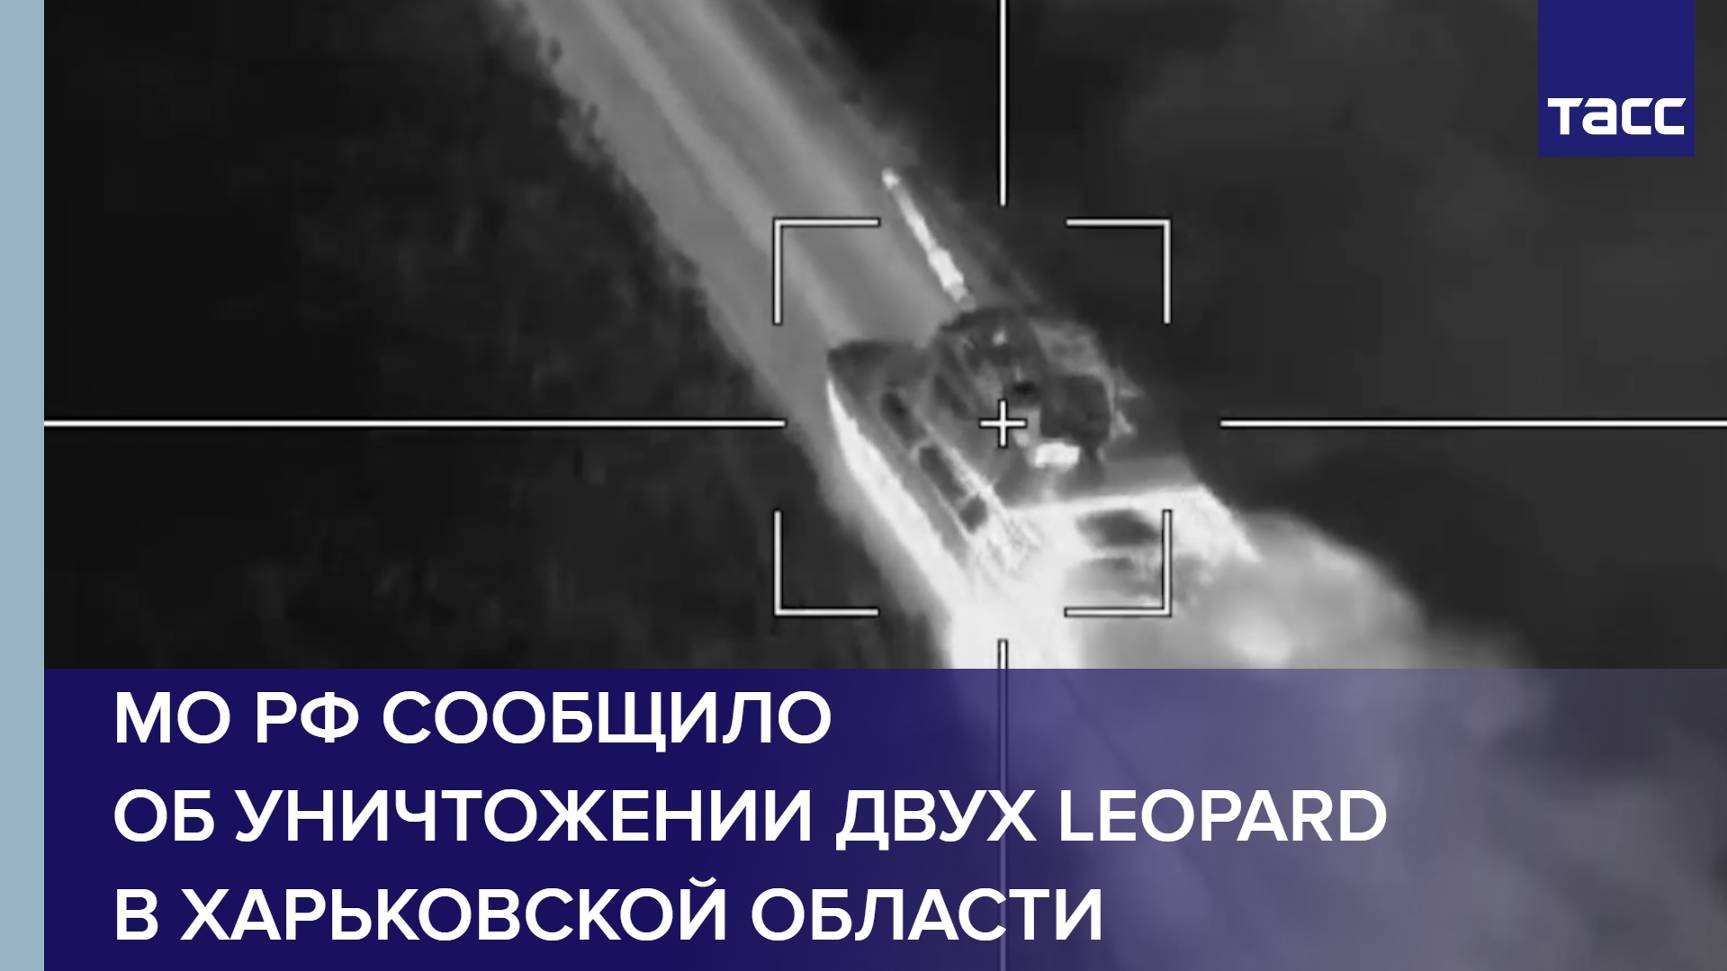 МО РФ сообщило об уничтожении двух Leopard в Харьковской области